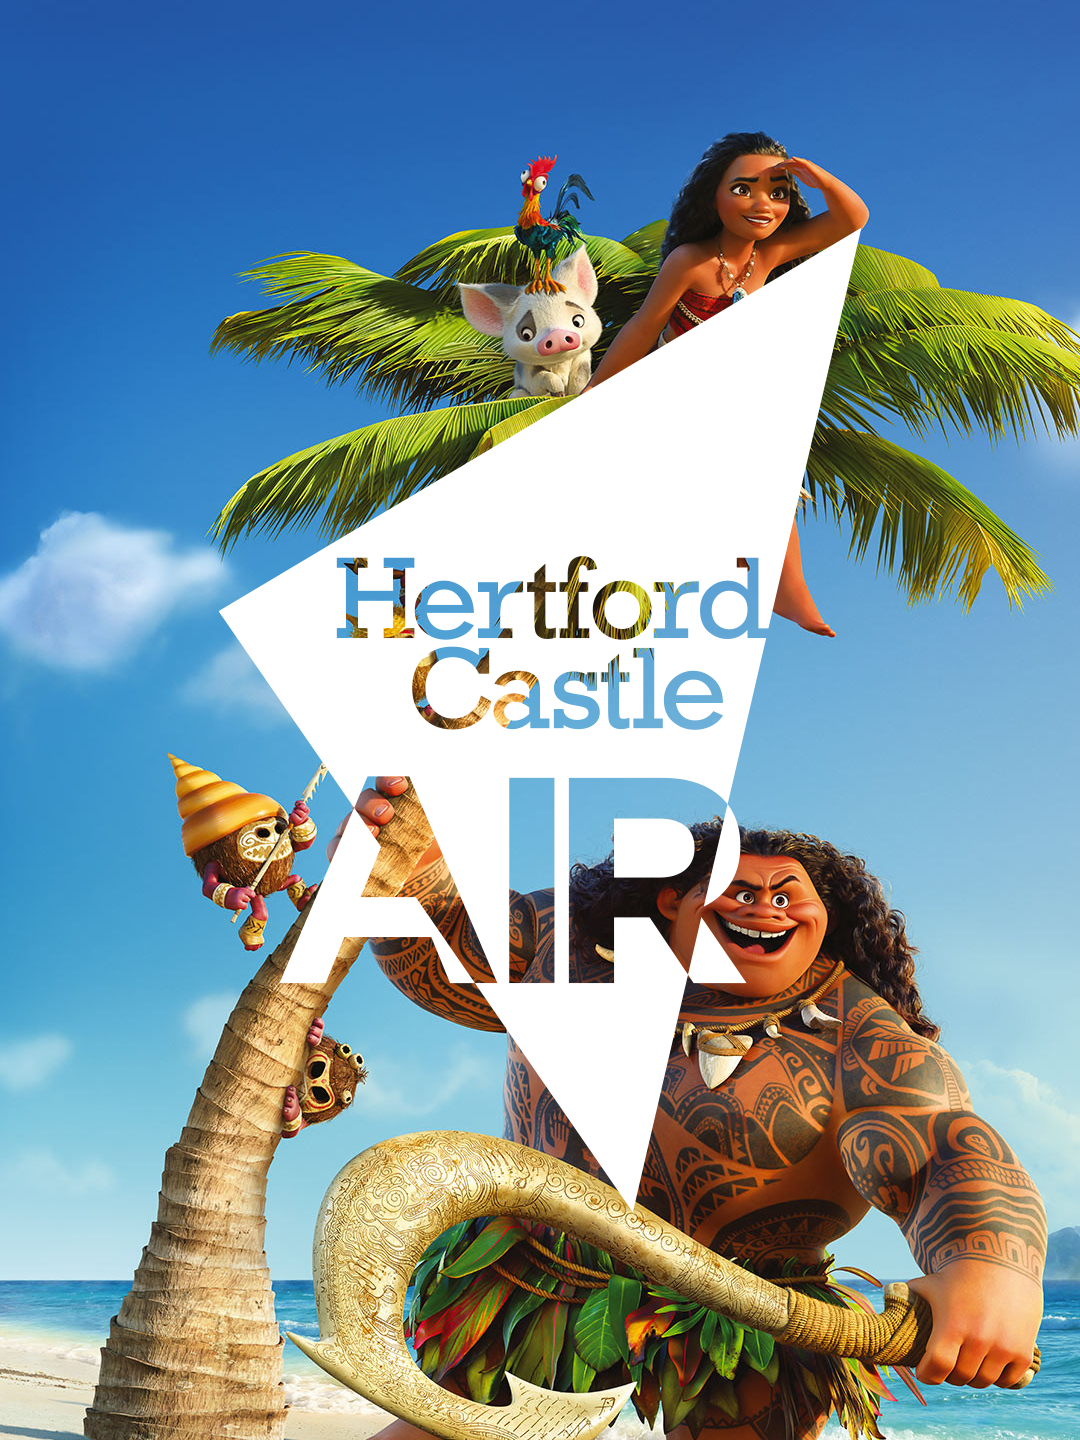 Hertford Castle's open-air brand mark design over Disney's Moana.